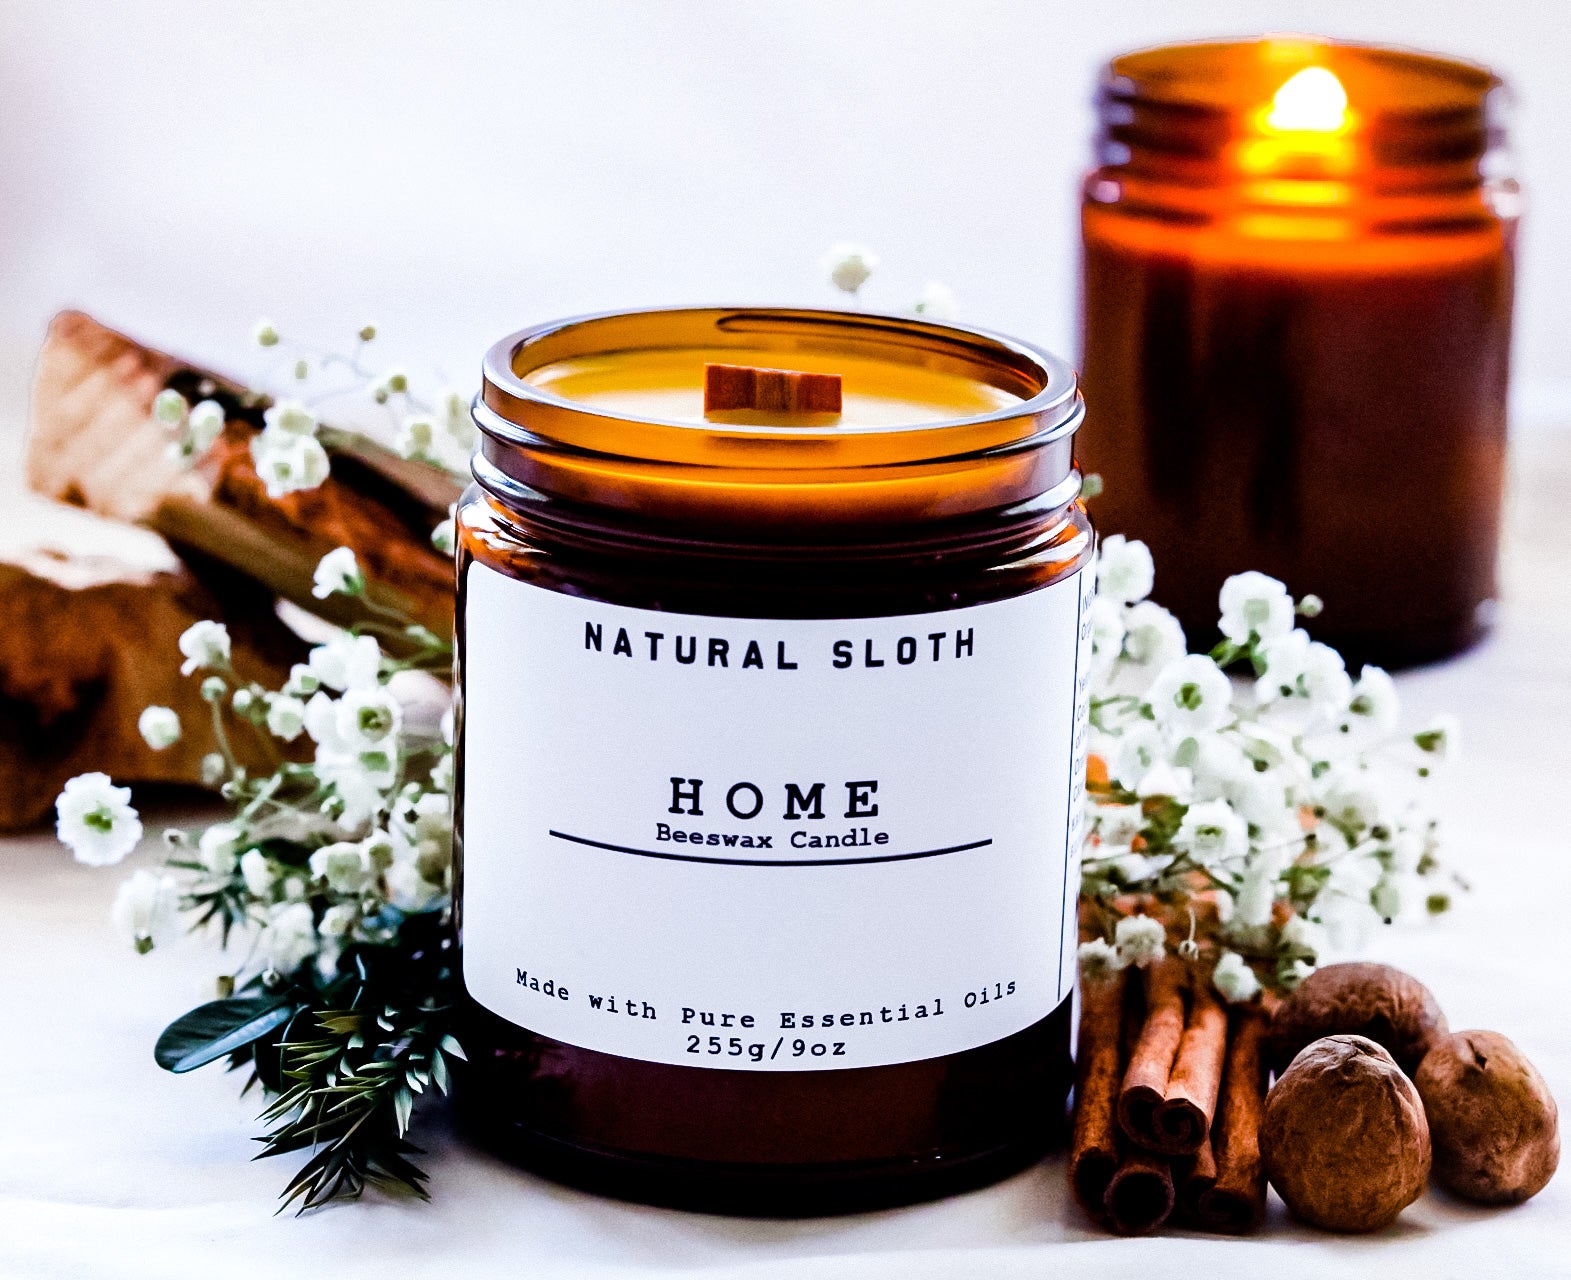 Home Wax Melts – Natural Sloth